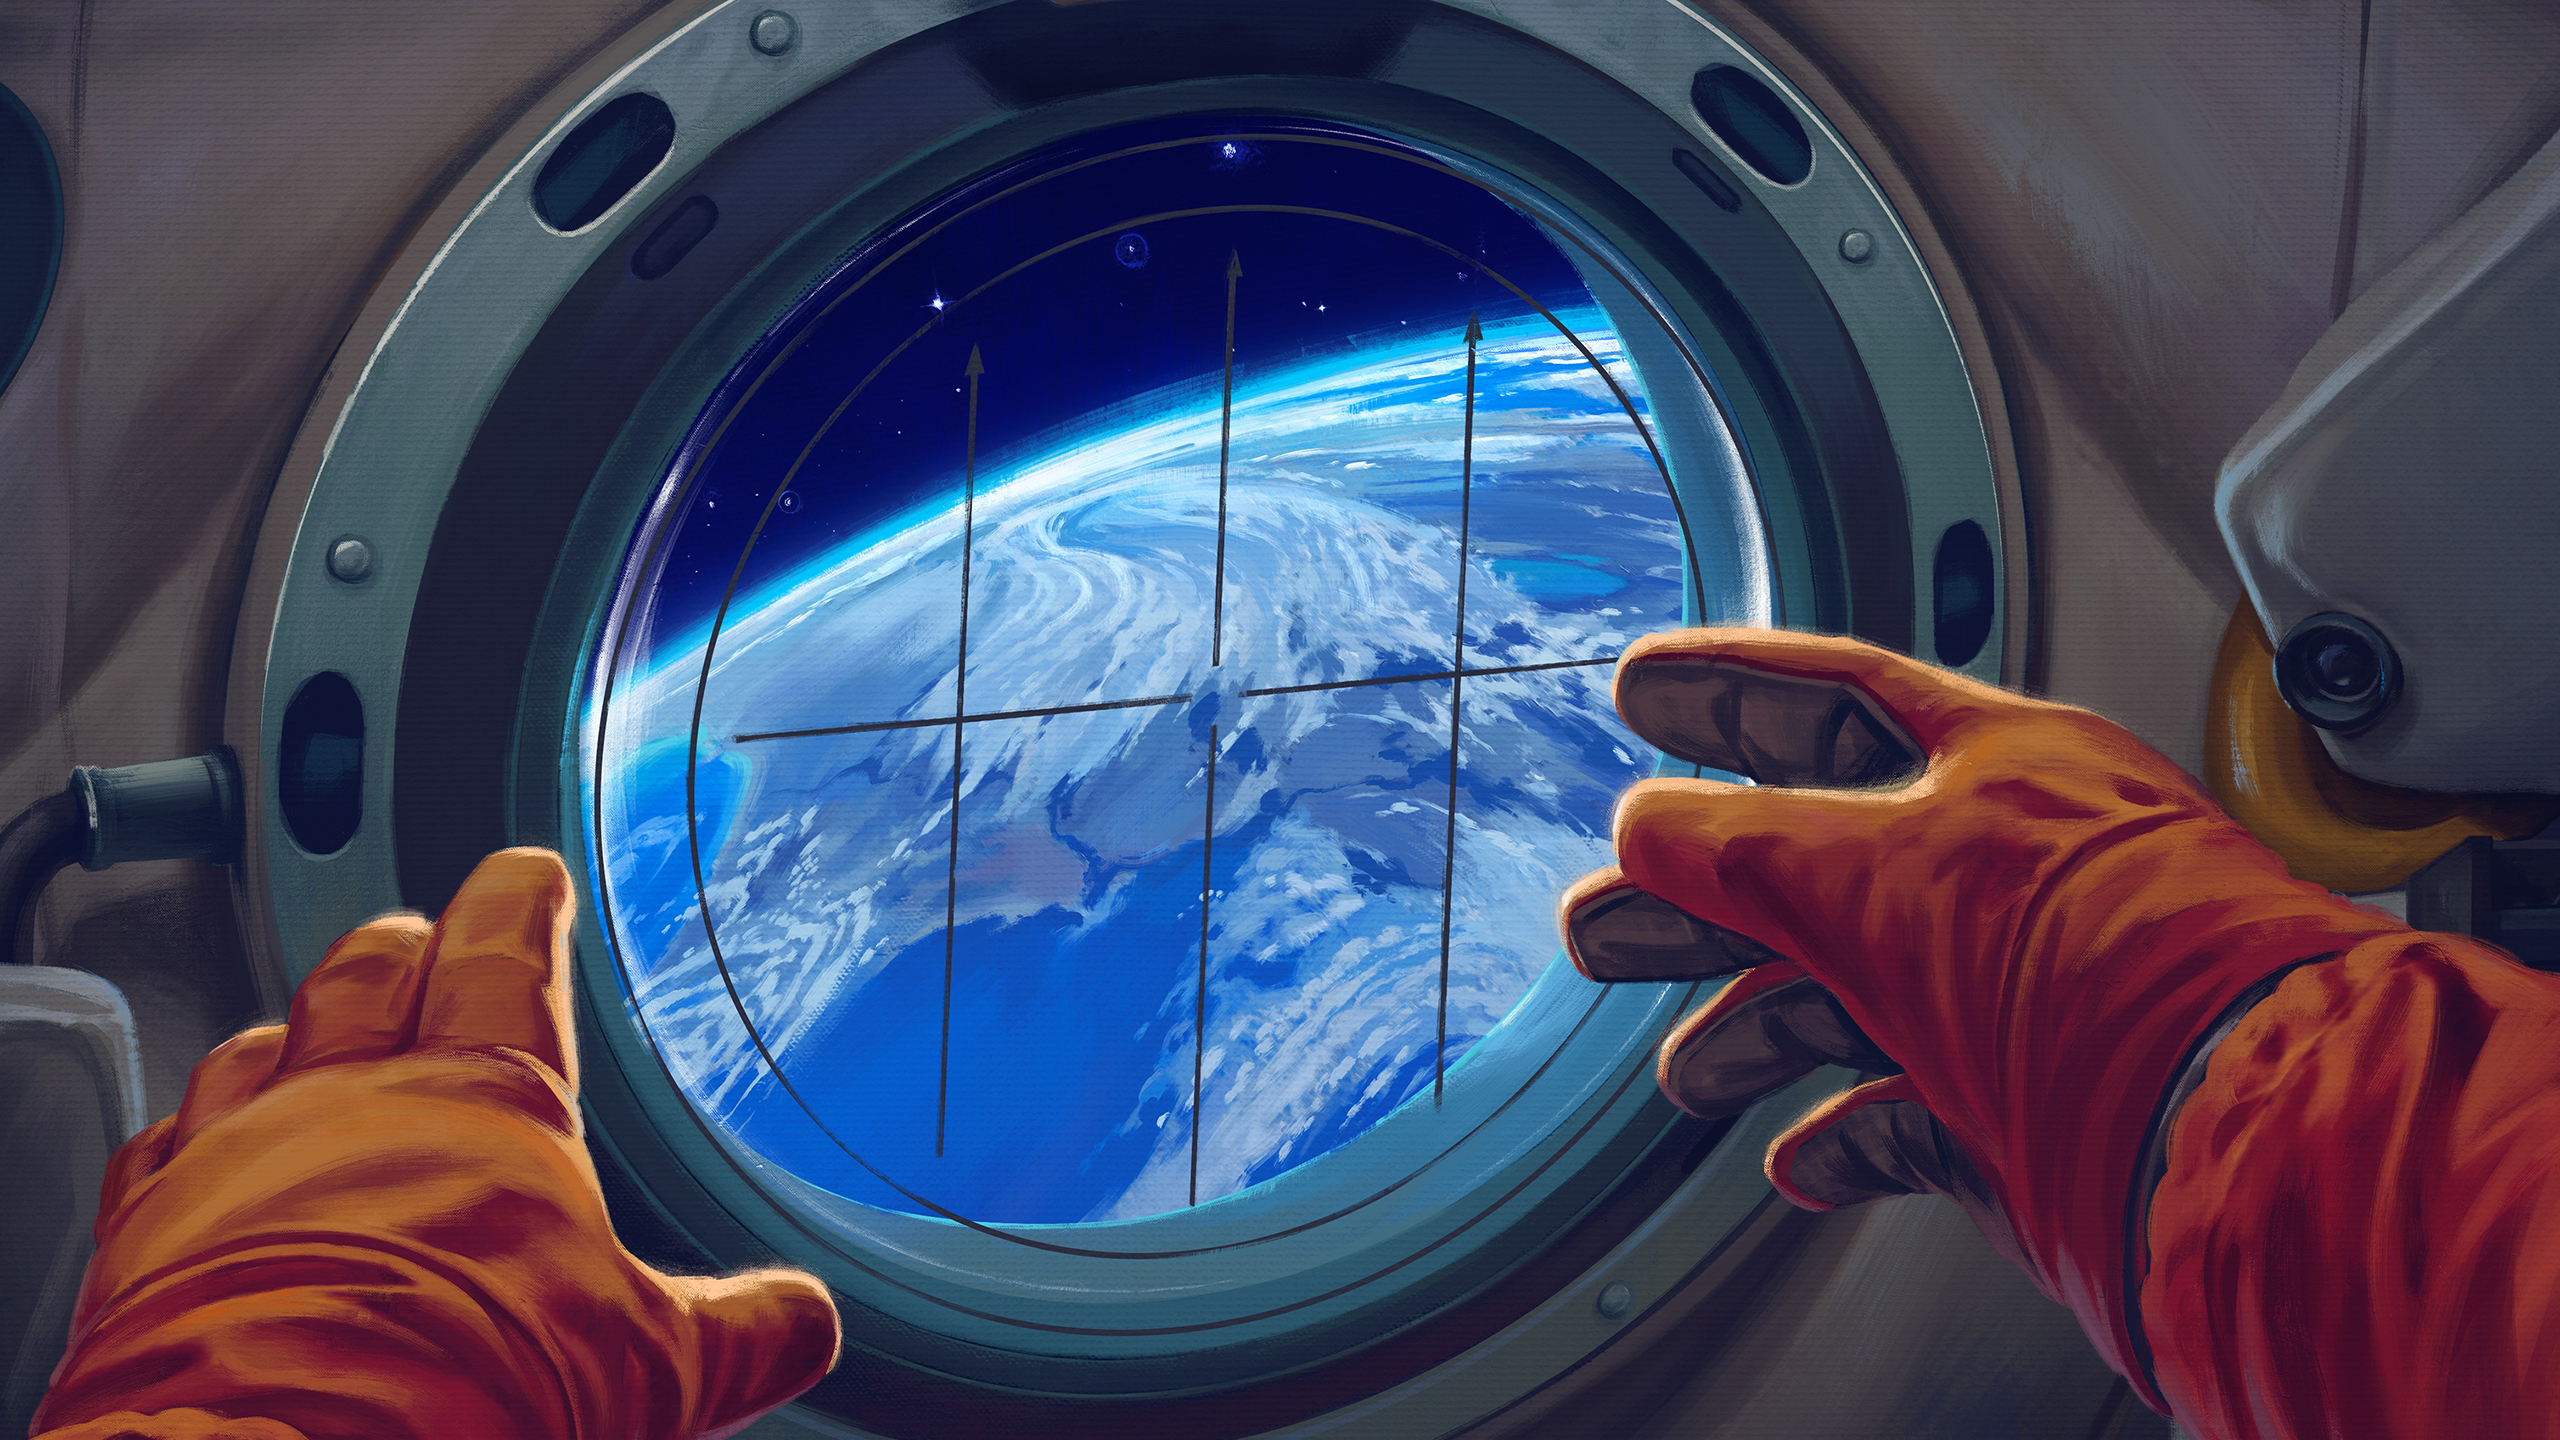 Spacecraft window, astronaut, 2560x1440 wallpaper